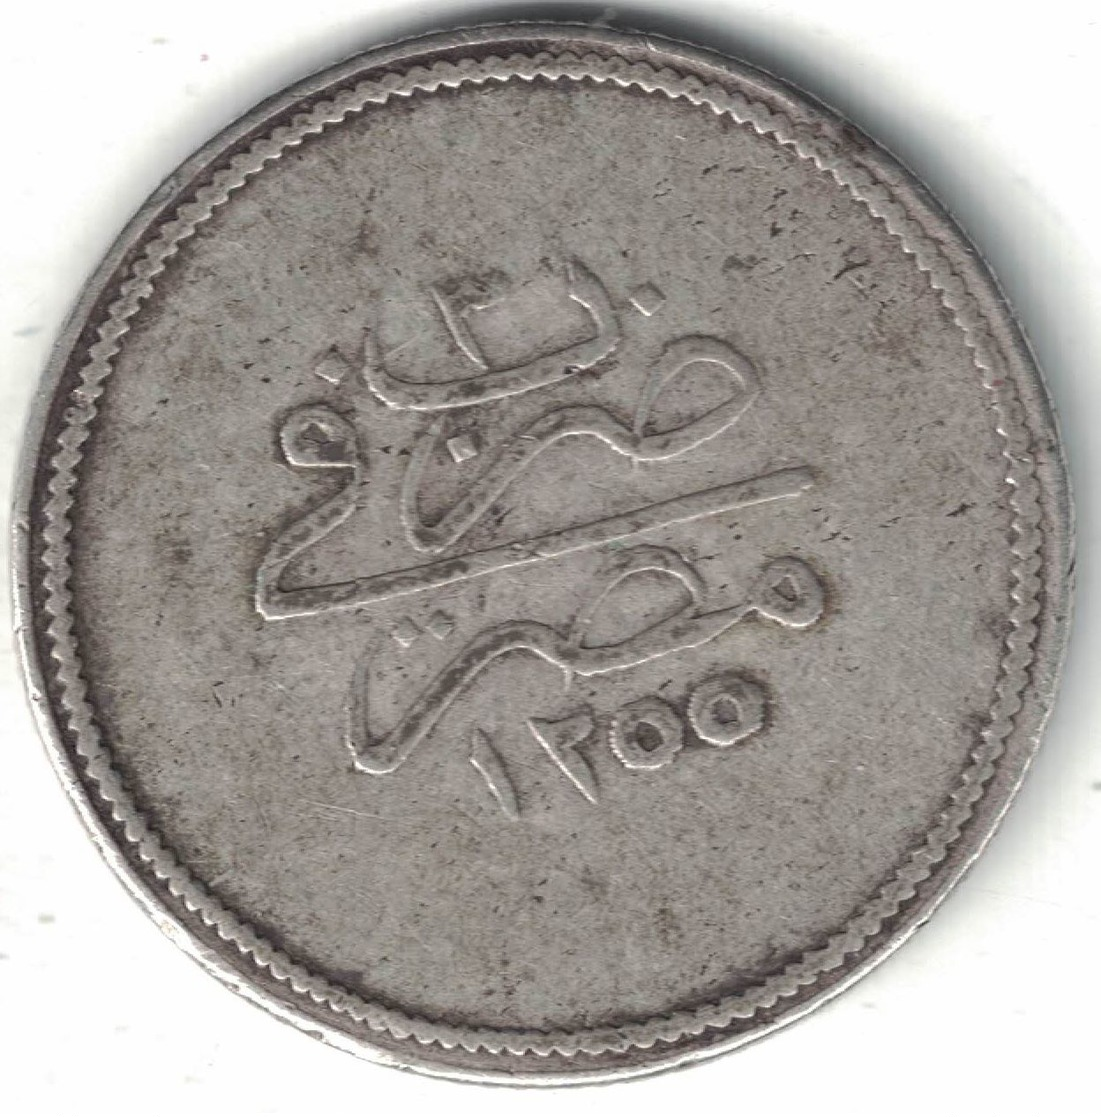 Ottoman Egypt 5 Qirsh AH1255/3(1841) - Egypt